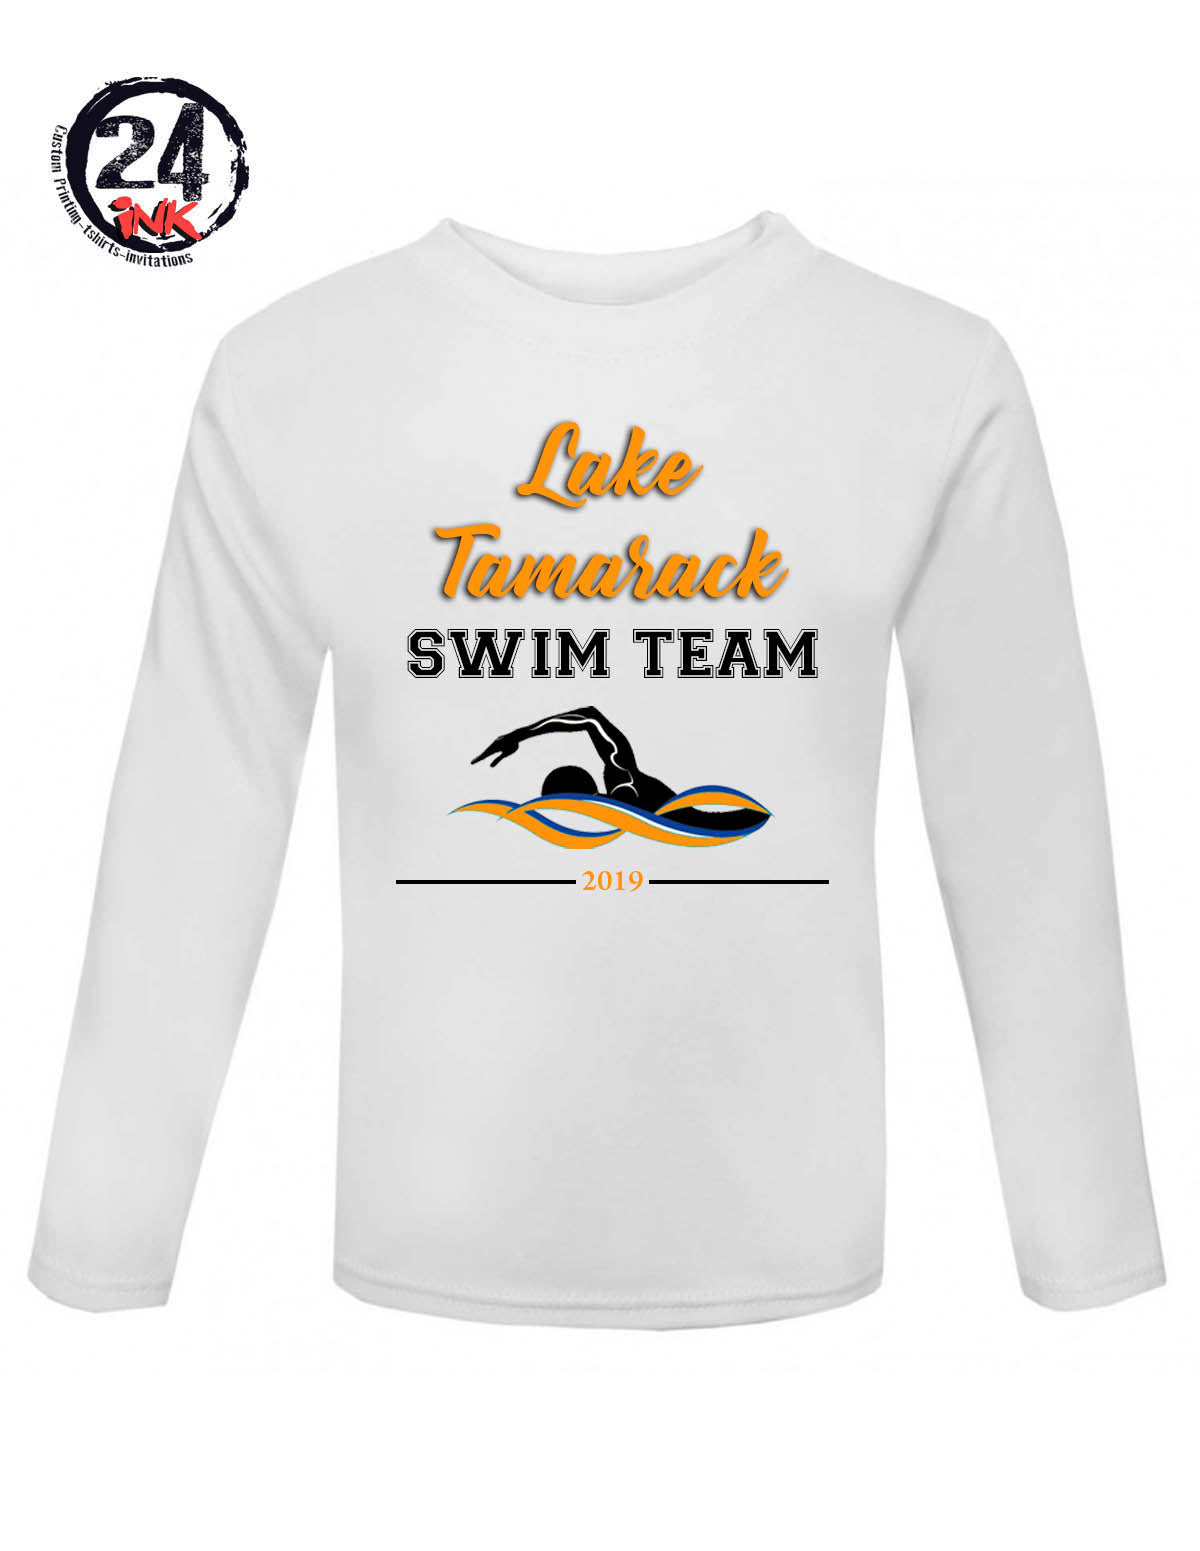 Lake Tamarack Swim Team Shirt Design 2